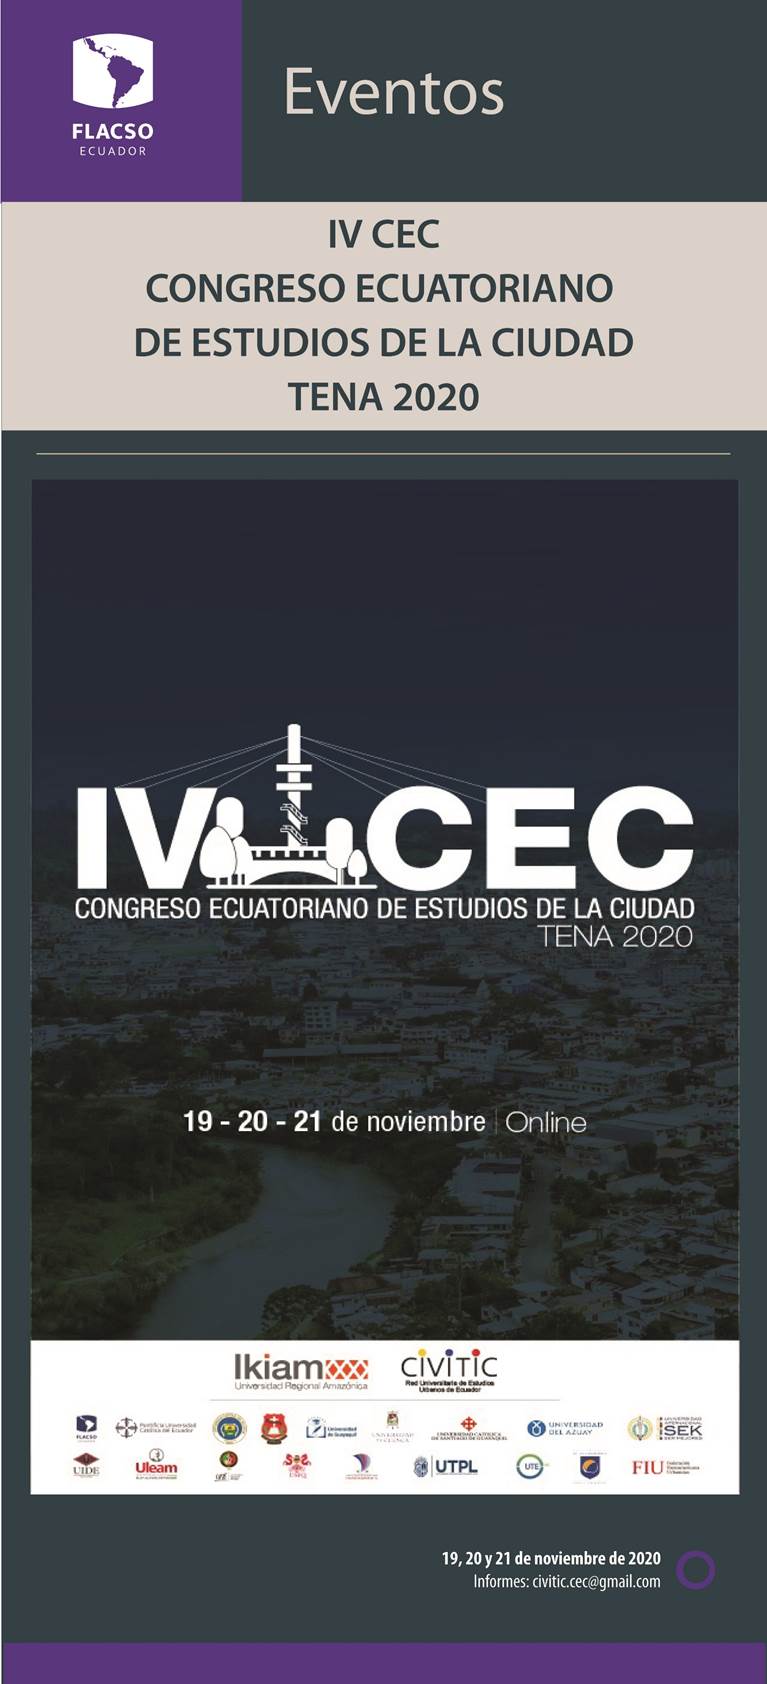 IV CEC Congreso Ecuatoriano de estudios de la ciudad Tena 2020